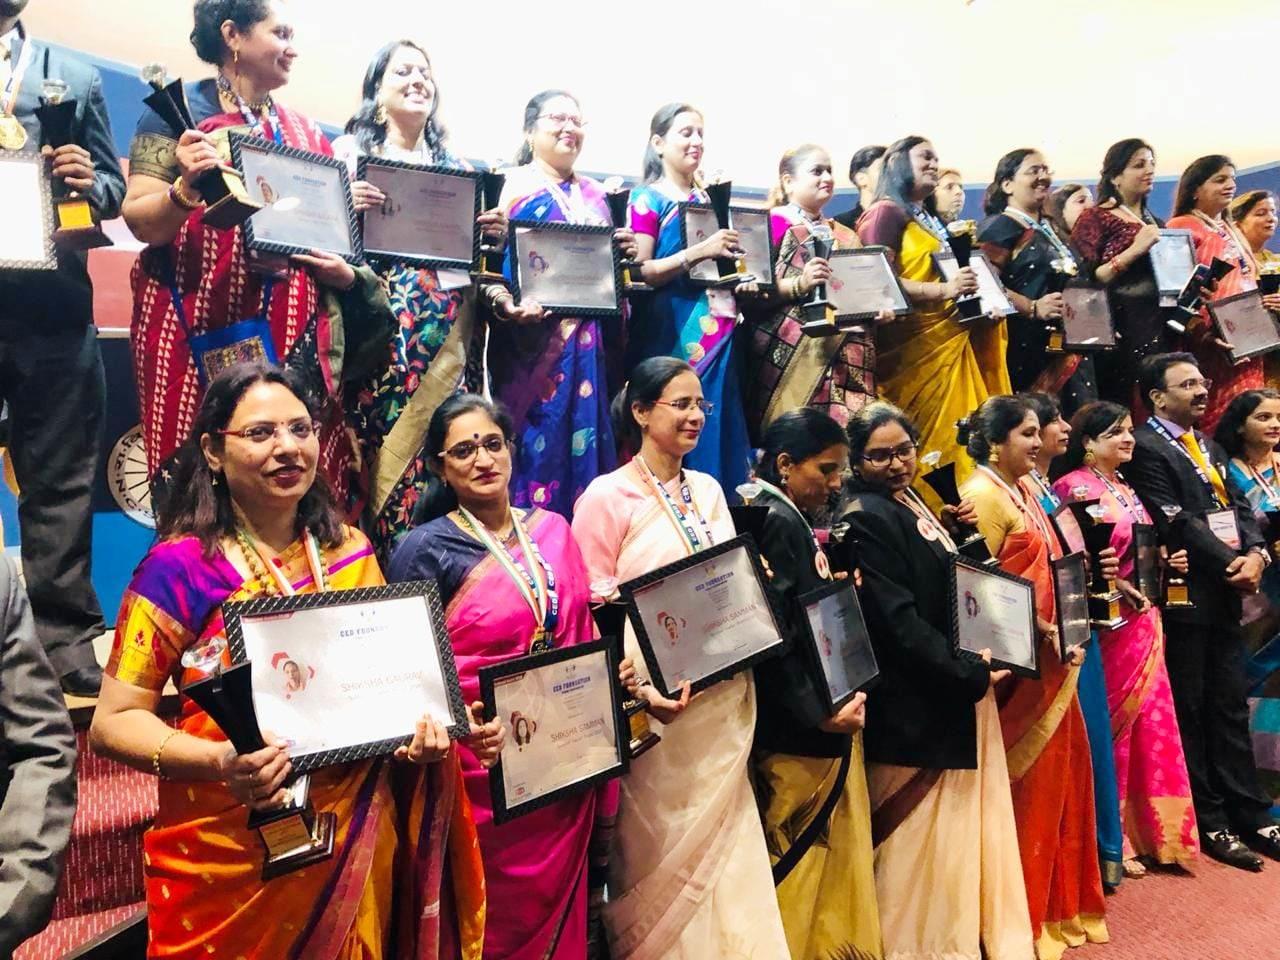 Delhi Public School Udhampur added National Teachers Award 2018-19 (03-12-2018)